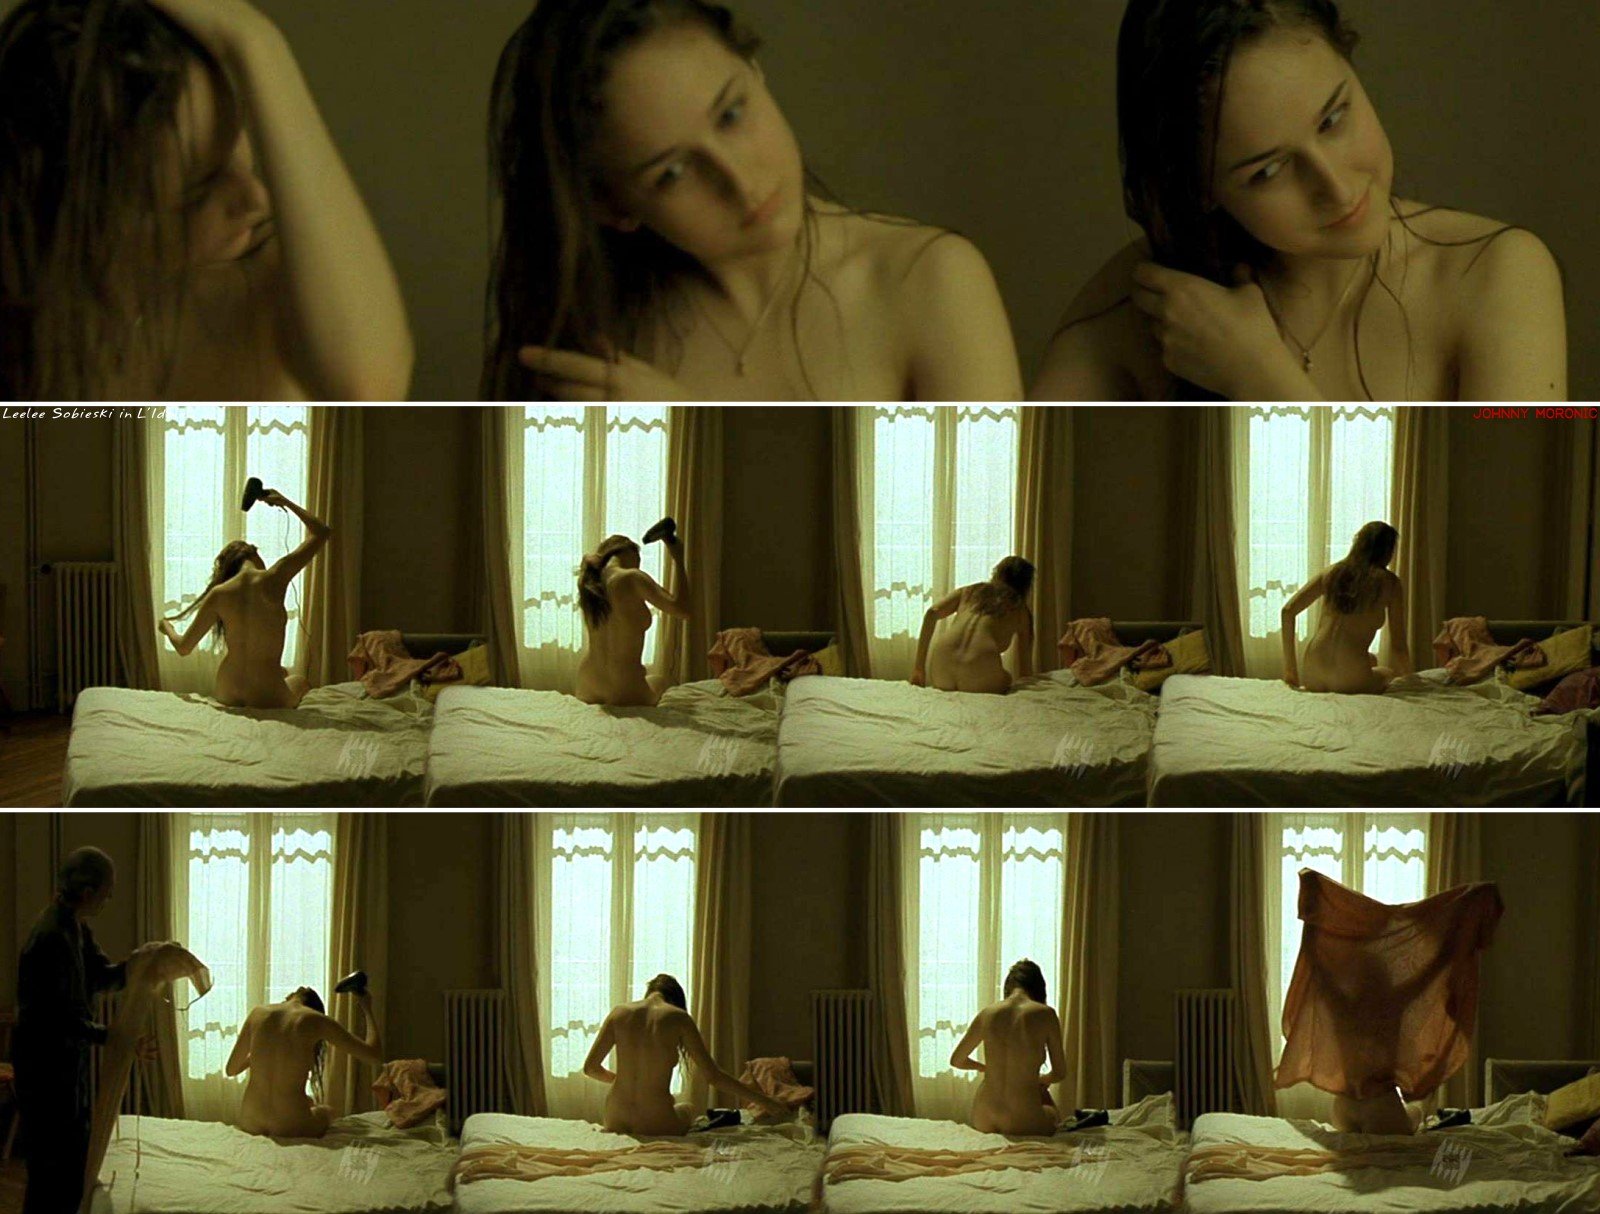 ancensored.com Leelee Sobieski nude pics, página - 4 ANCENSORED.